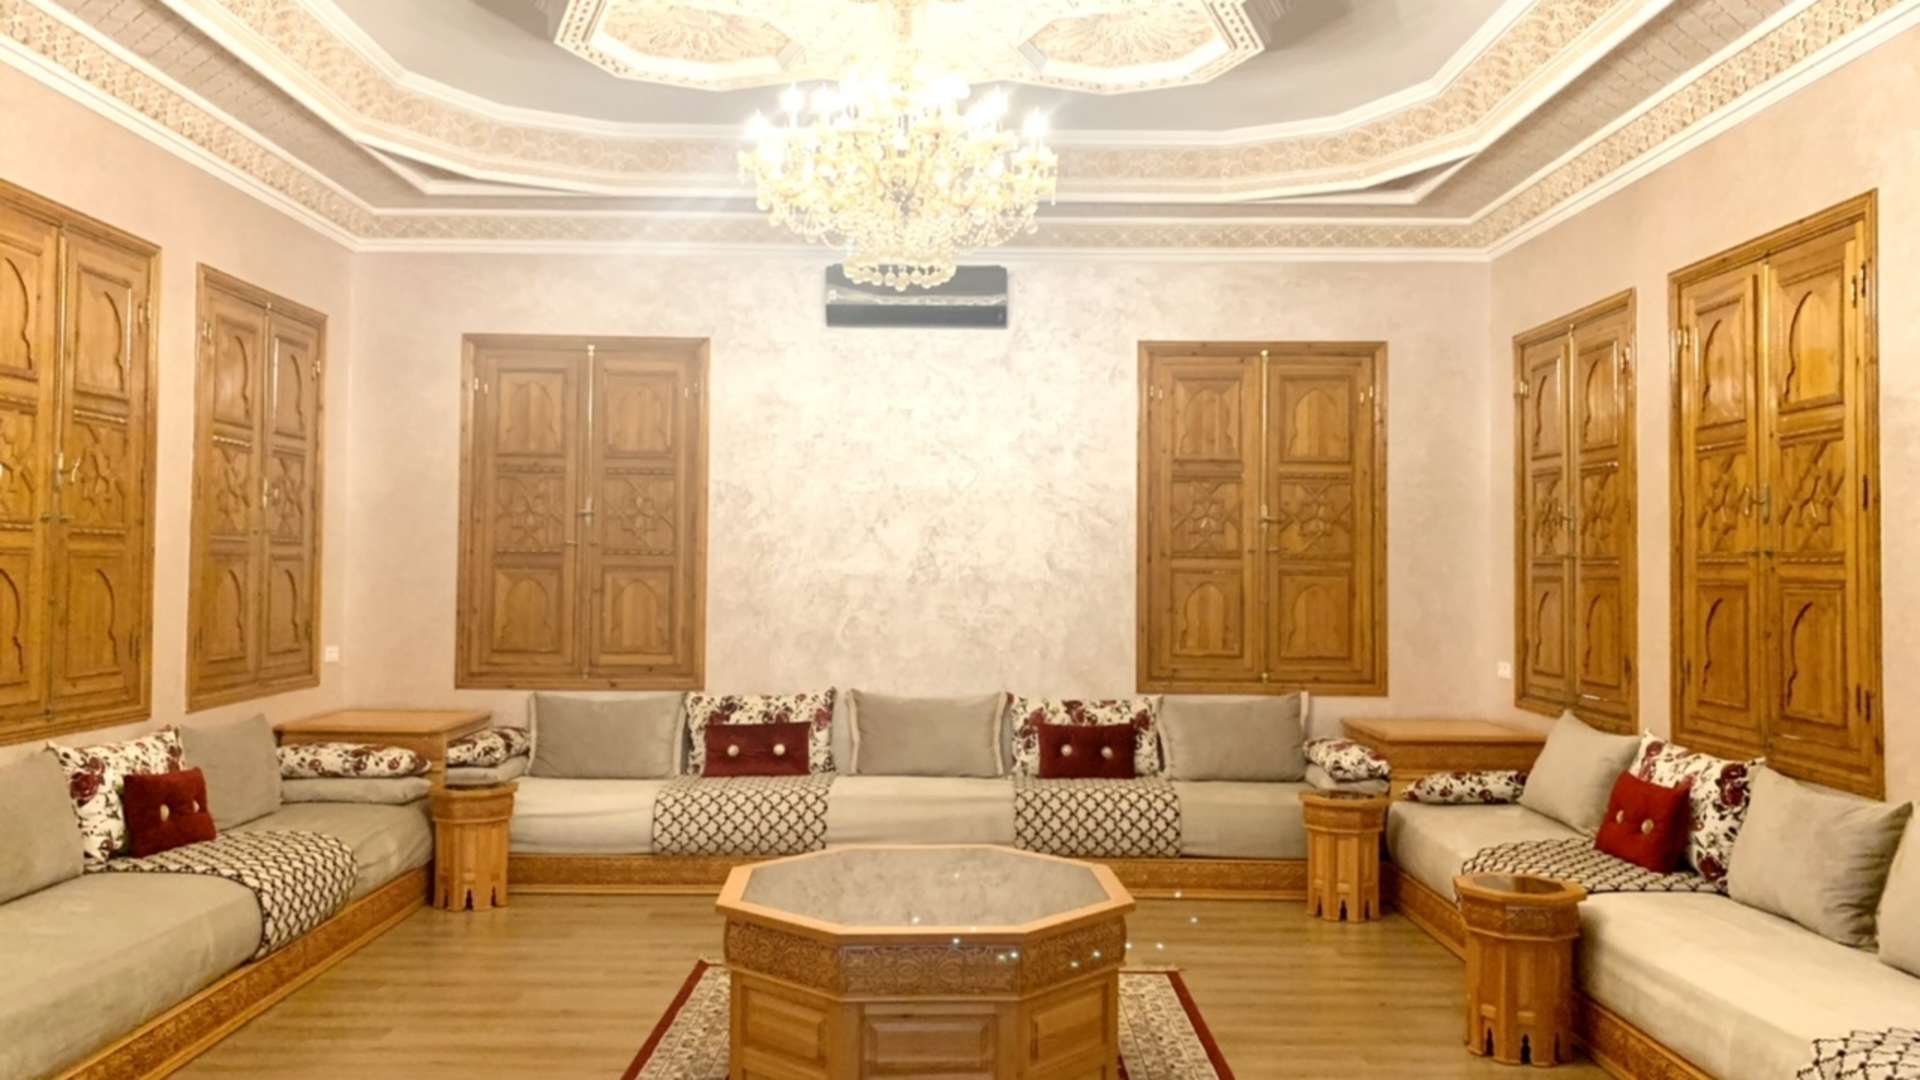 Location de vacances,Villa,Magnifique propriété privée de 7 suites à 15 min. du centre de Marrakech,Marrakech,Route de Fès